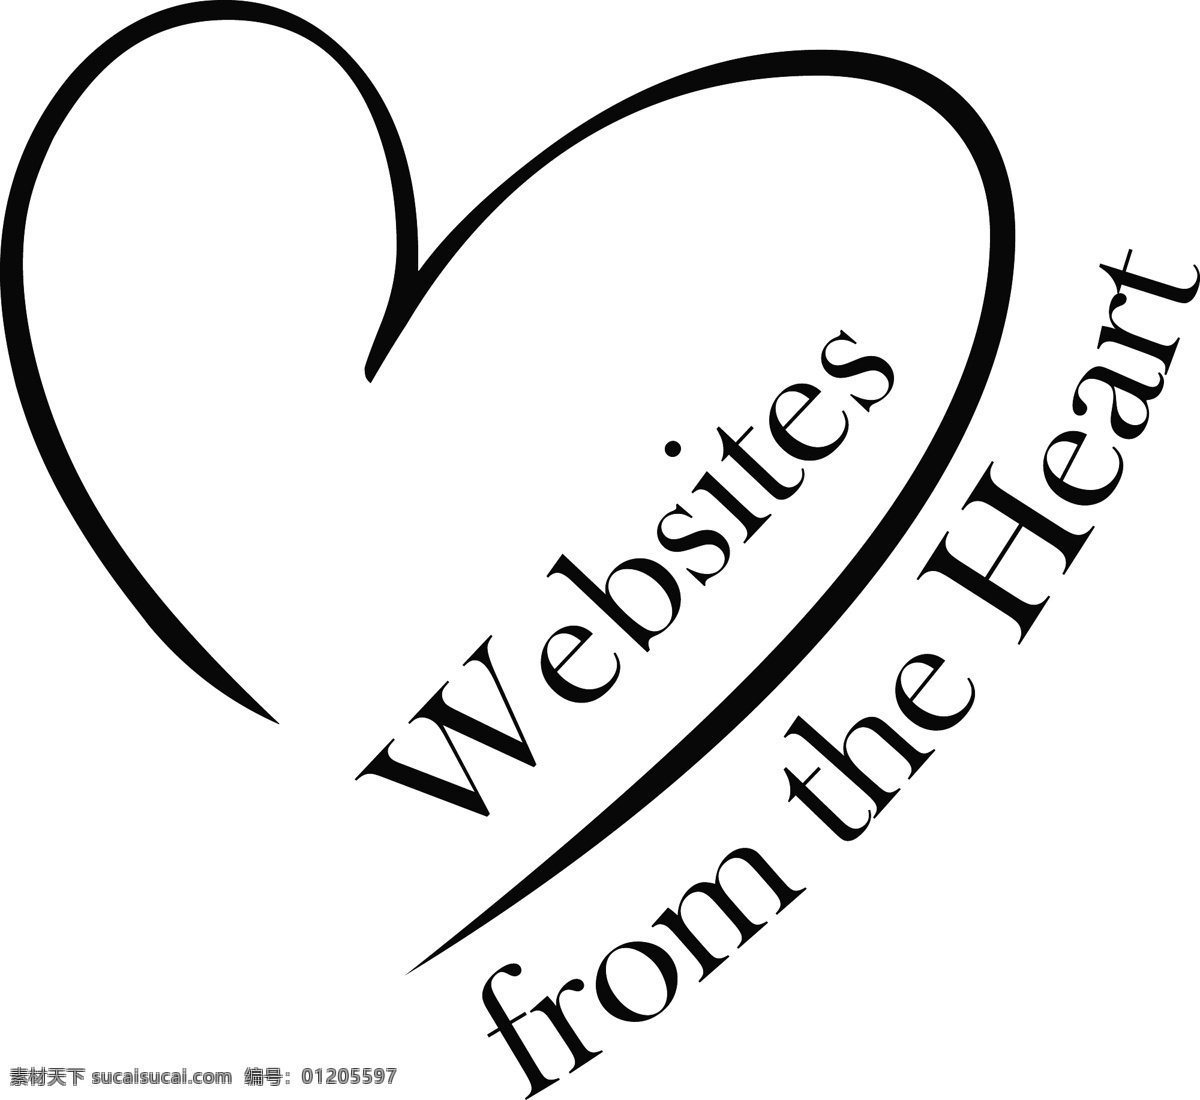 从心脏的网站 矢量标志下载 免费矢量标识 商标 品牌标识 标识 矢量 免费 品牌 公司 白色